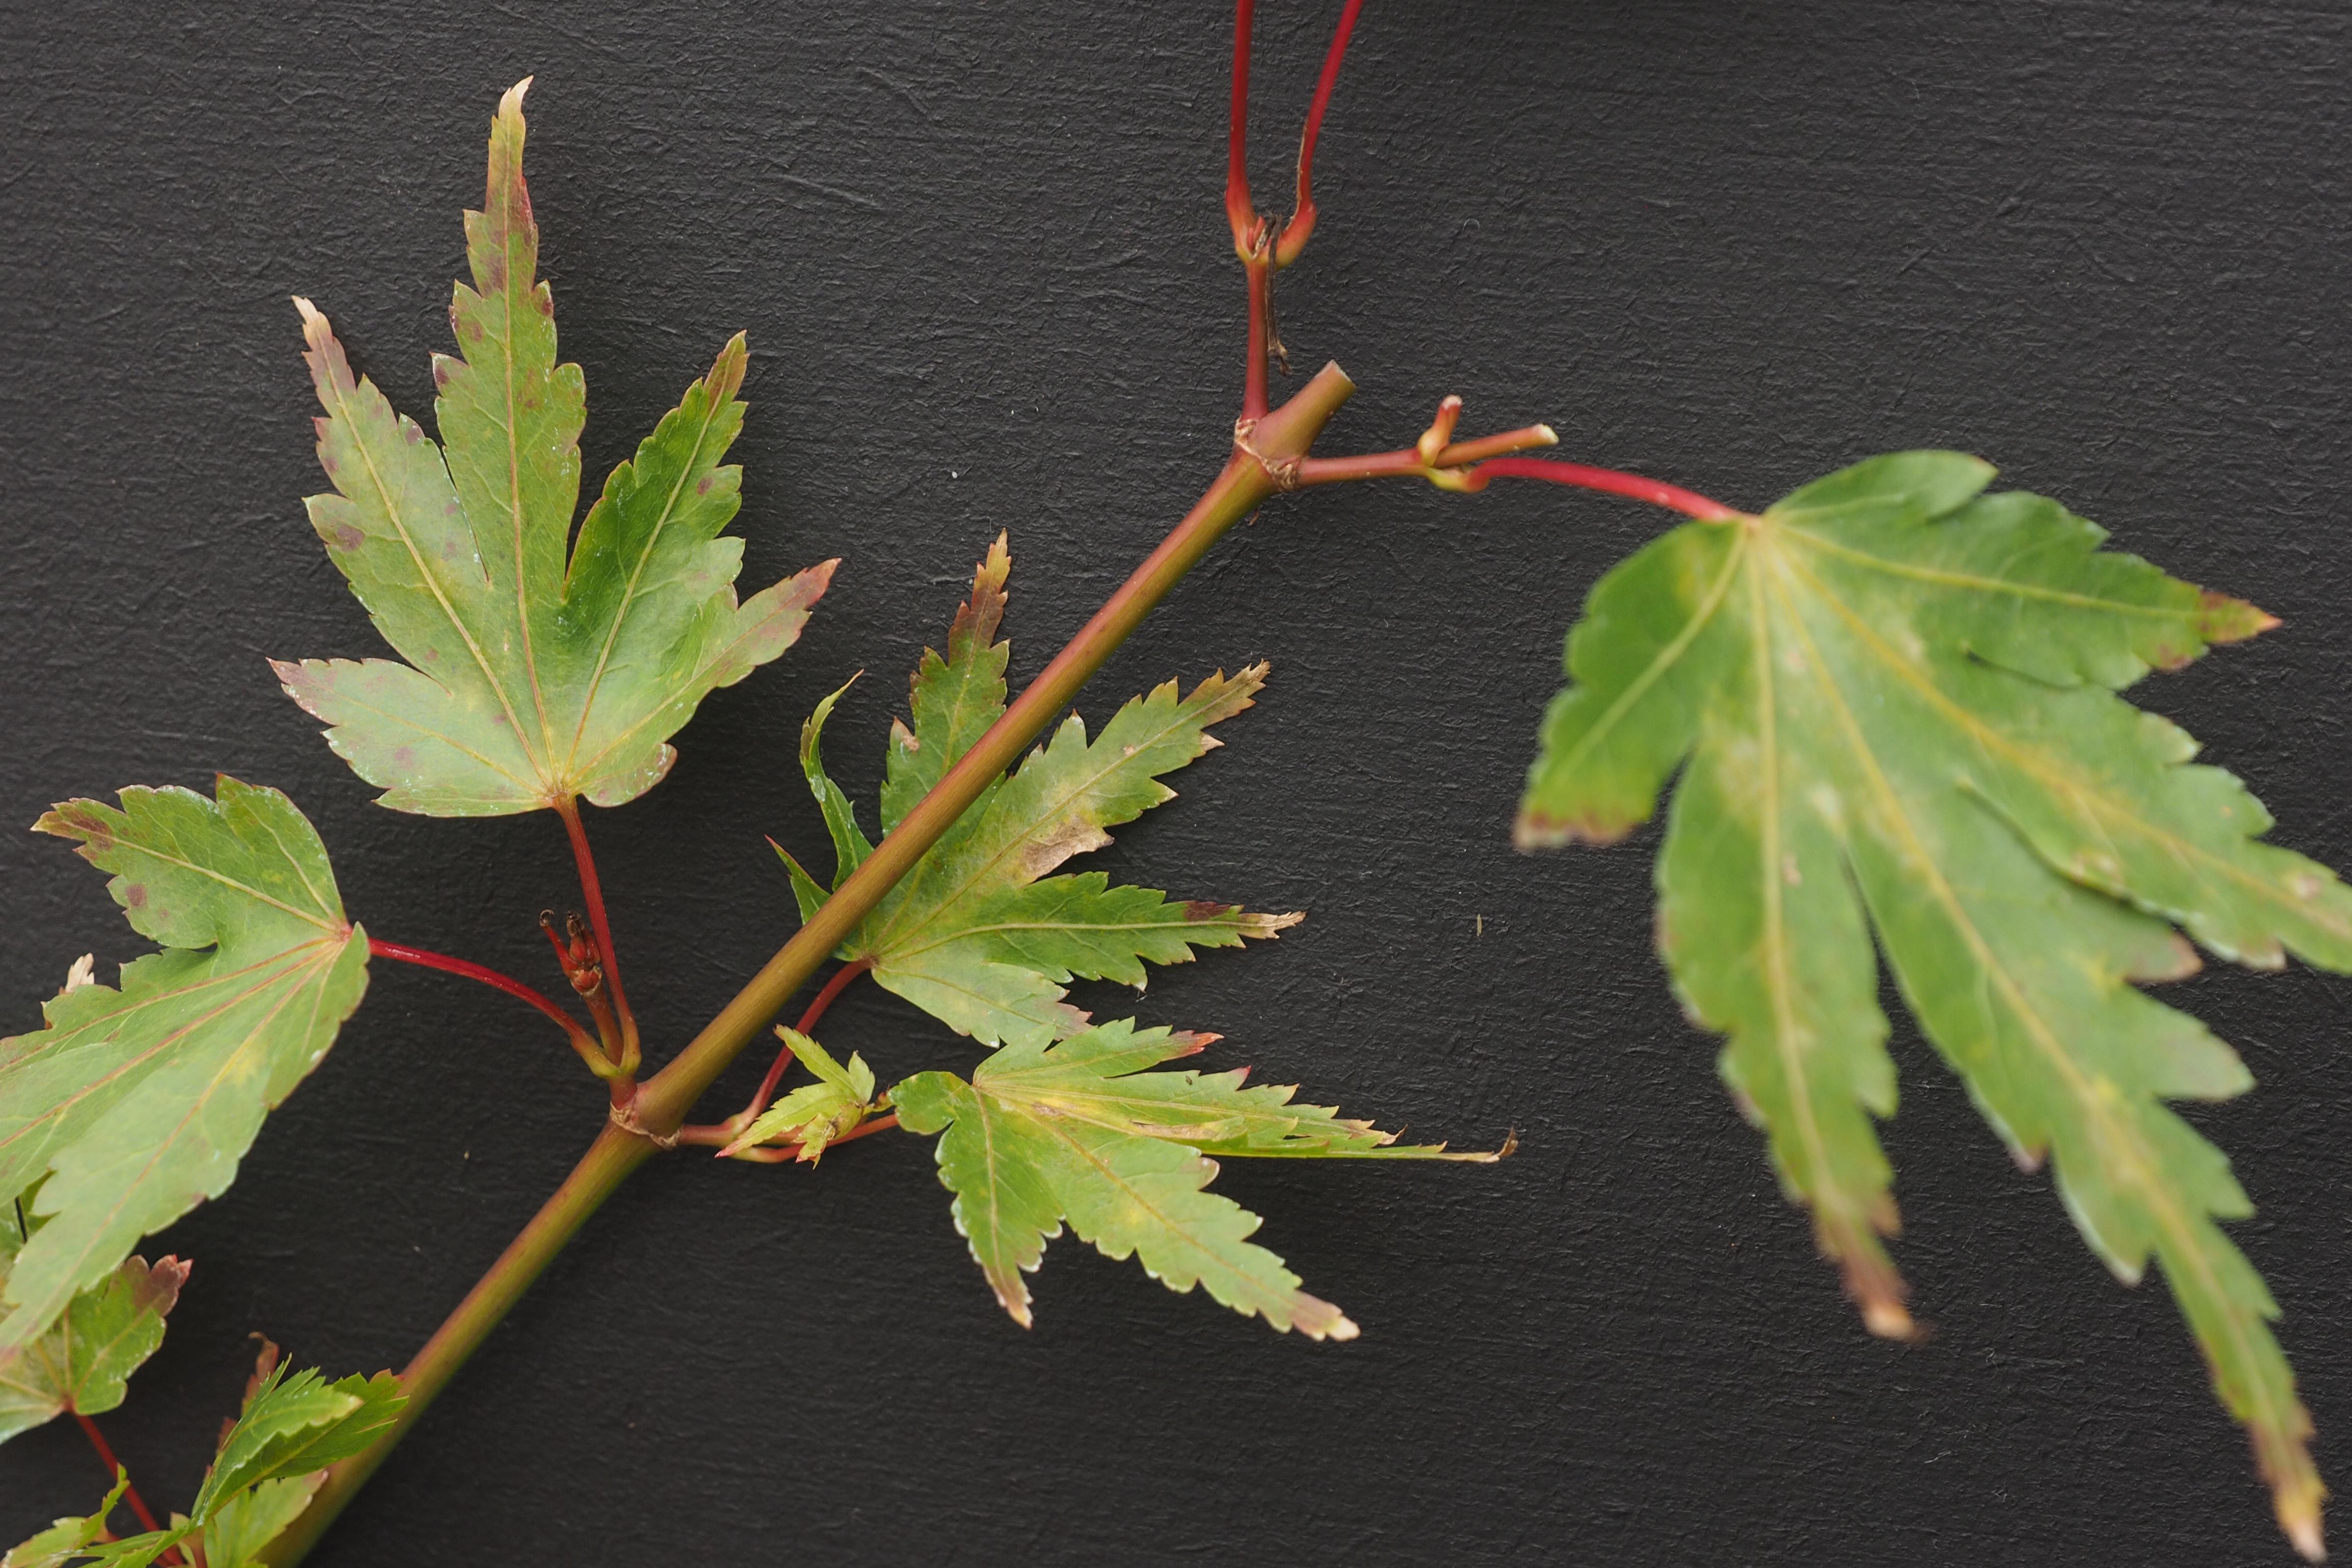 Acer palmatum 'Berry Broom' leaves